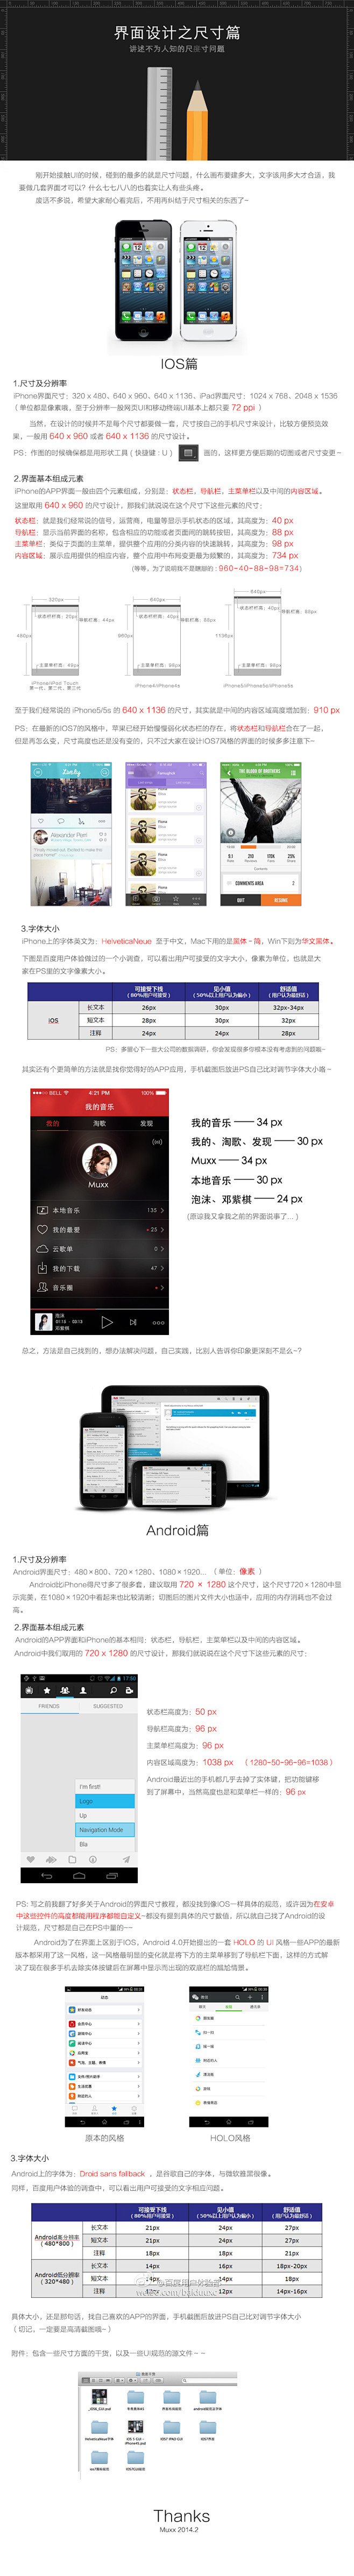 界面设计之尺寸篇-UI中国-专业界面设计...